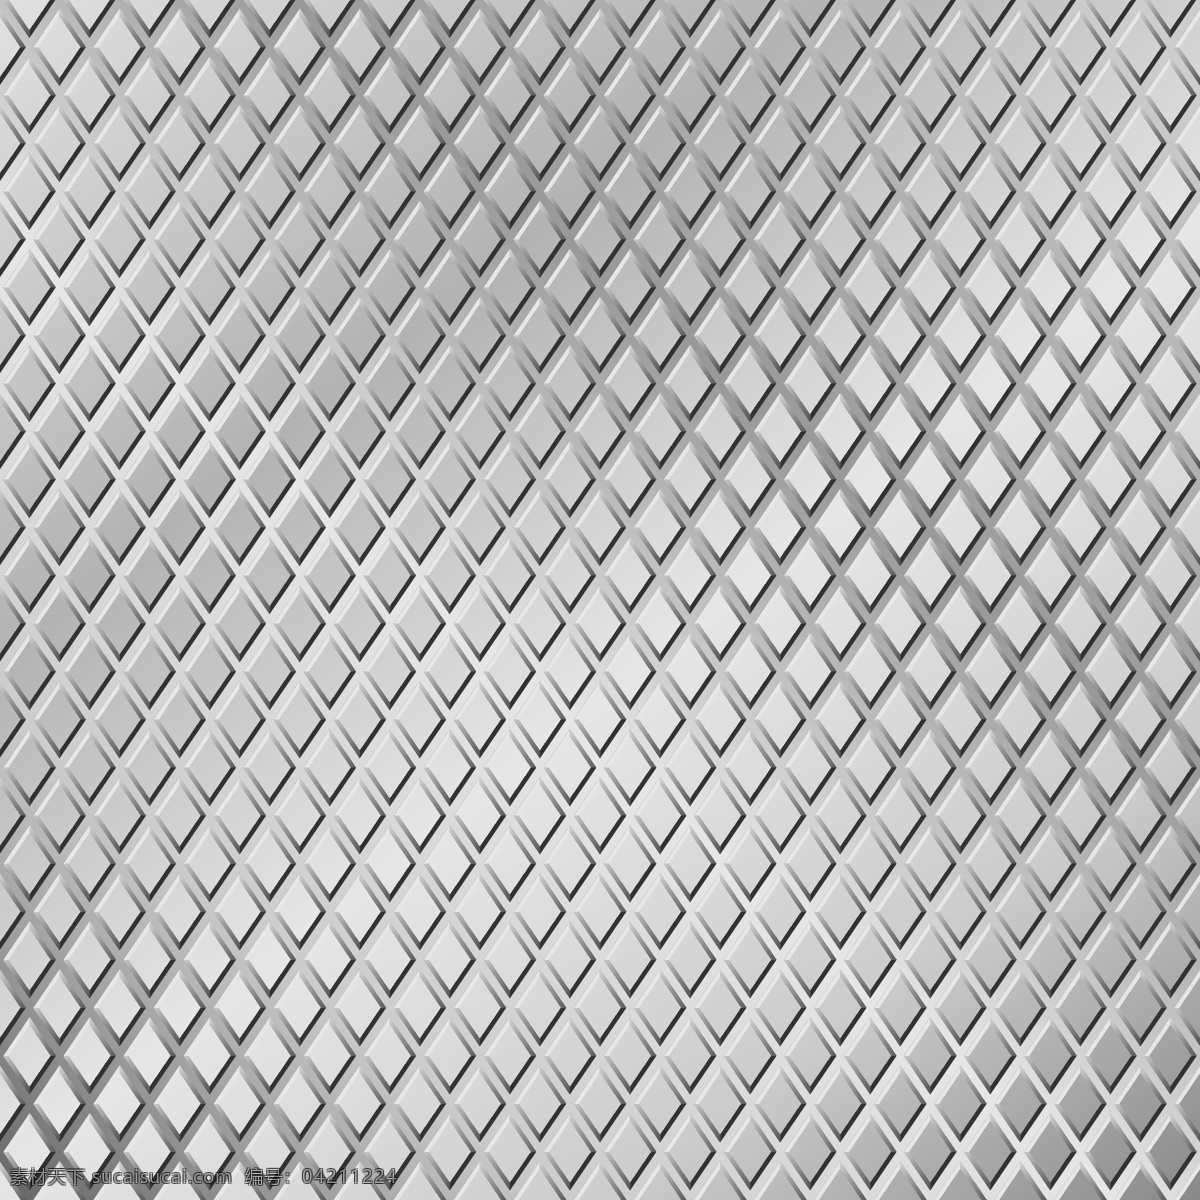 金属 材质 背景 矢量图 底纹 镂空 螺纹钢 其他矢量图